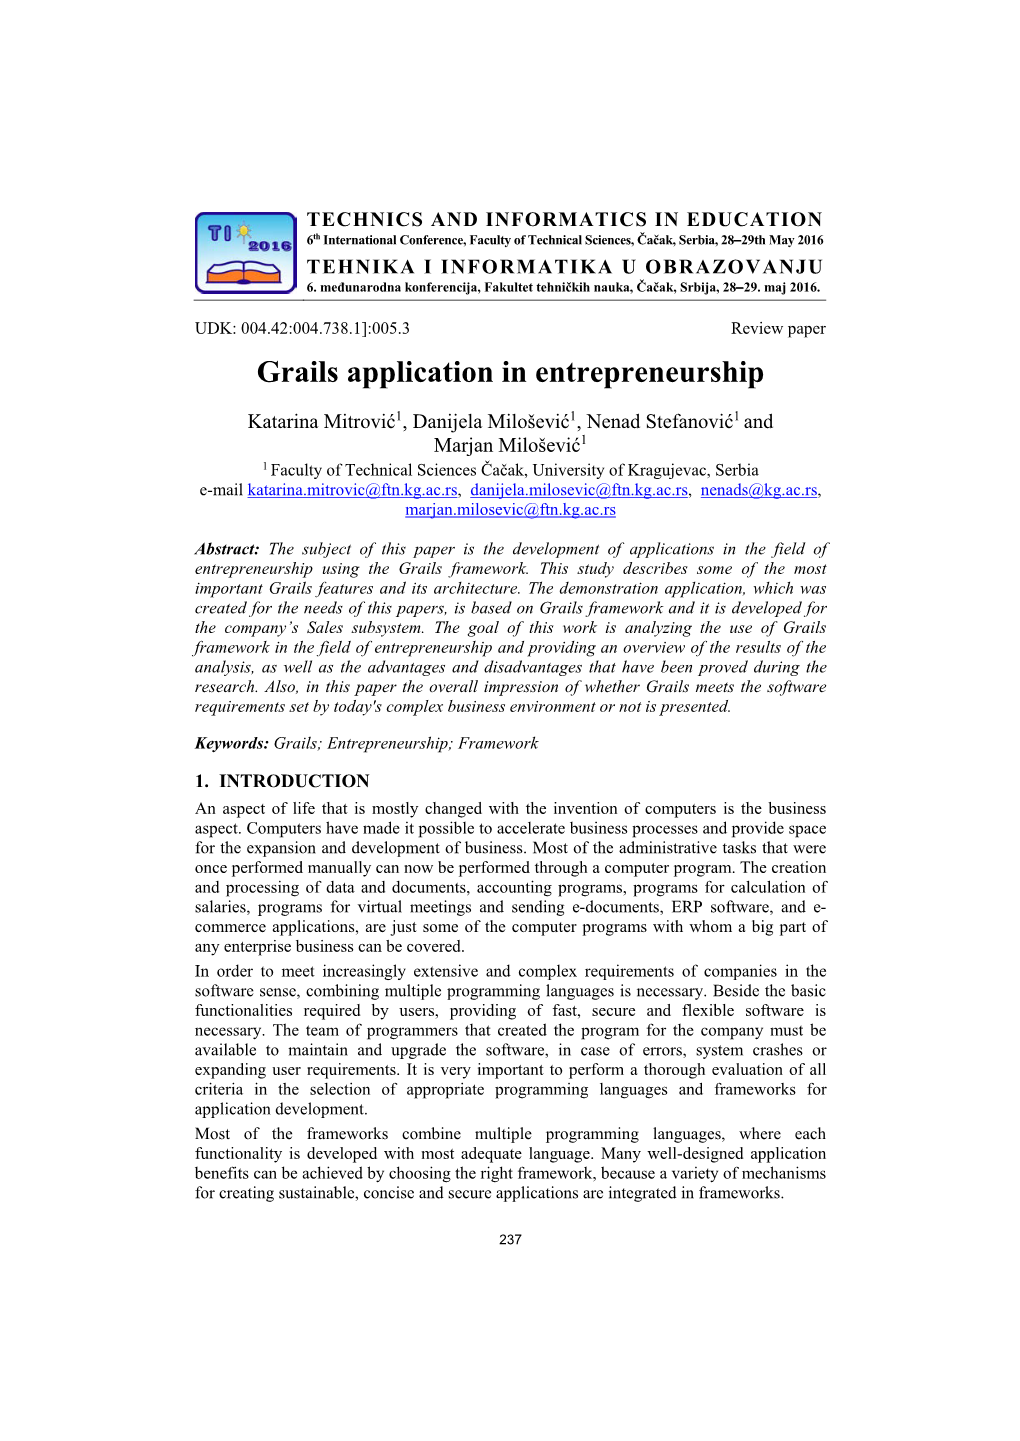 Grails Application in Entrepreneurship